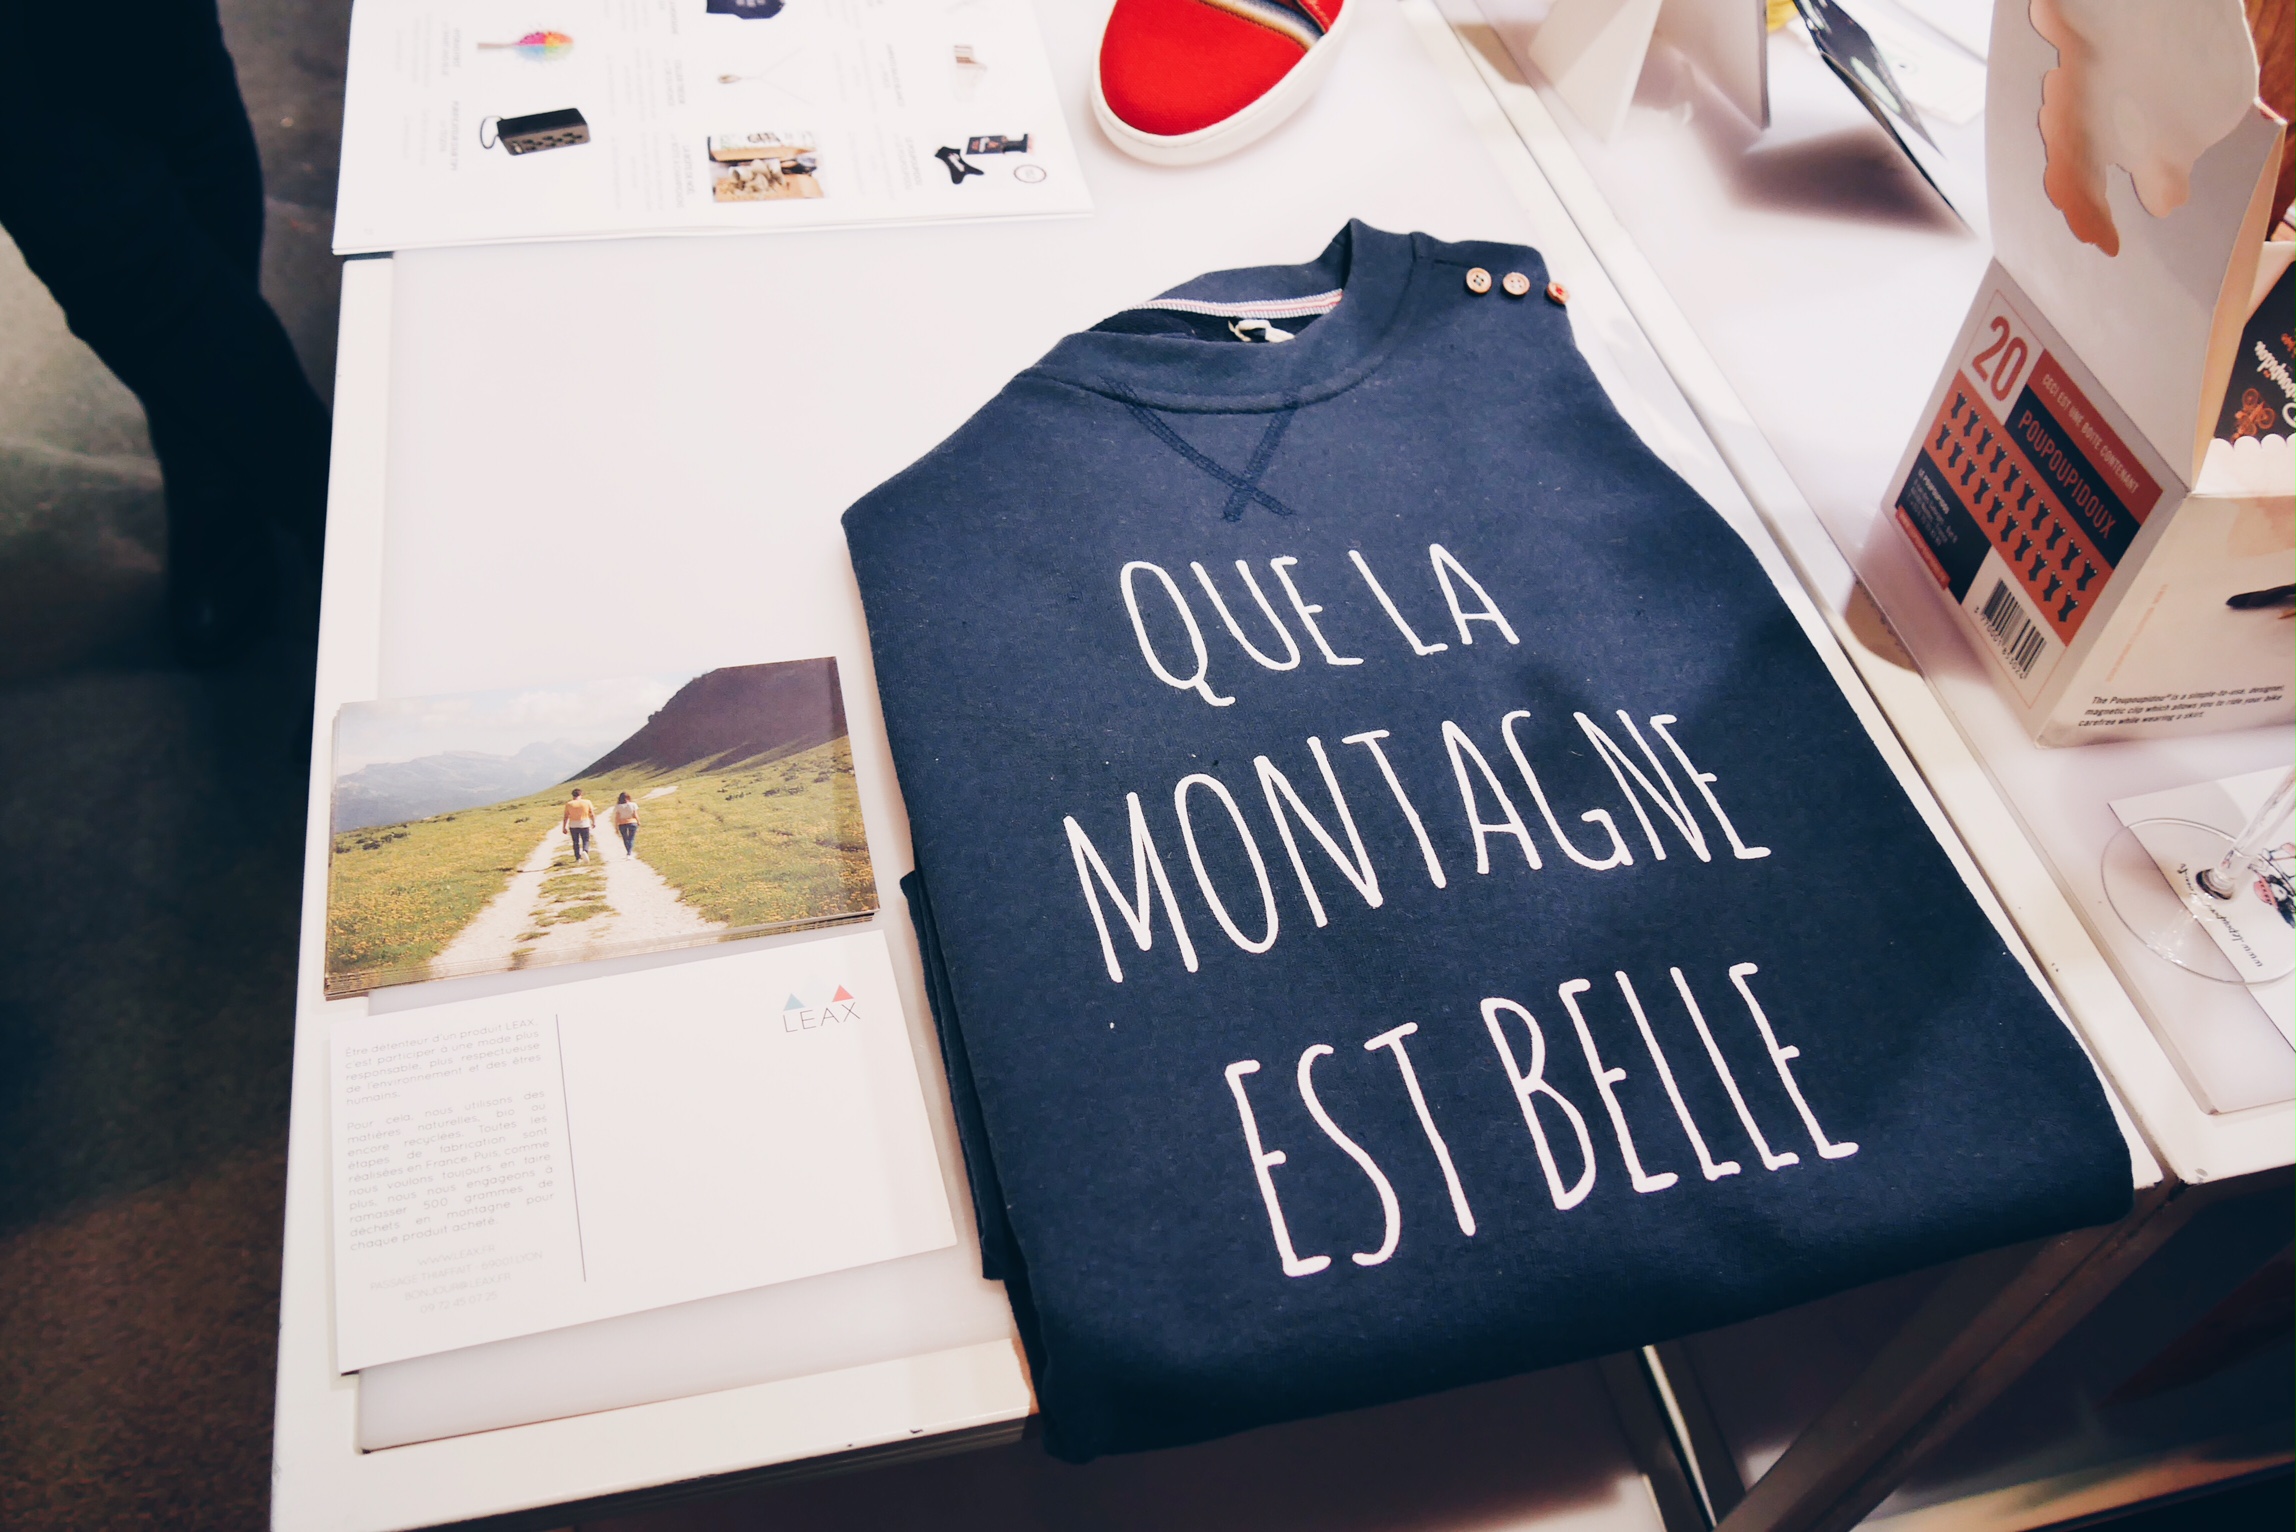 Sweat-shirt-Que-la-montagne-est-belle-Leax-vetement-écoresponsable-made-in-France-Noel-French-Tech-photo-usofparis-blog